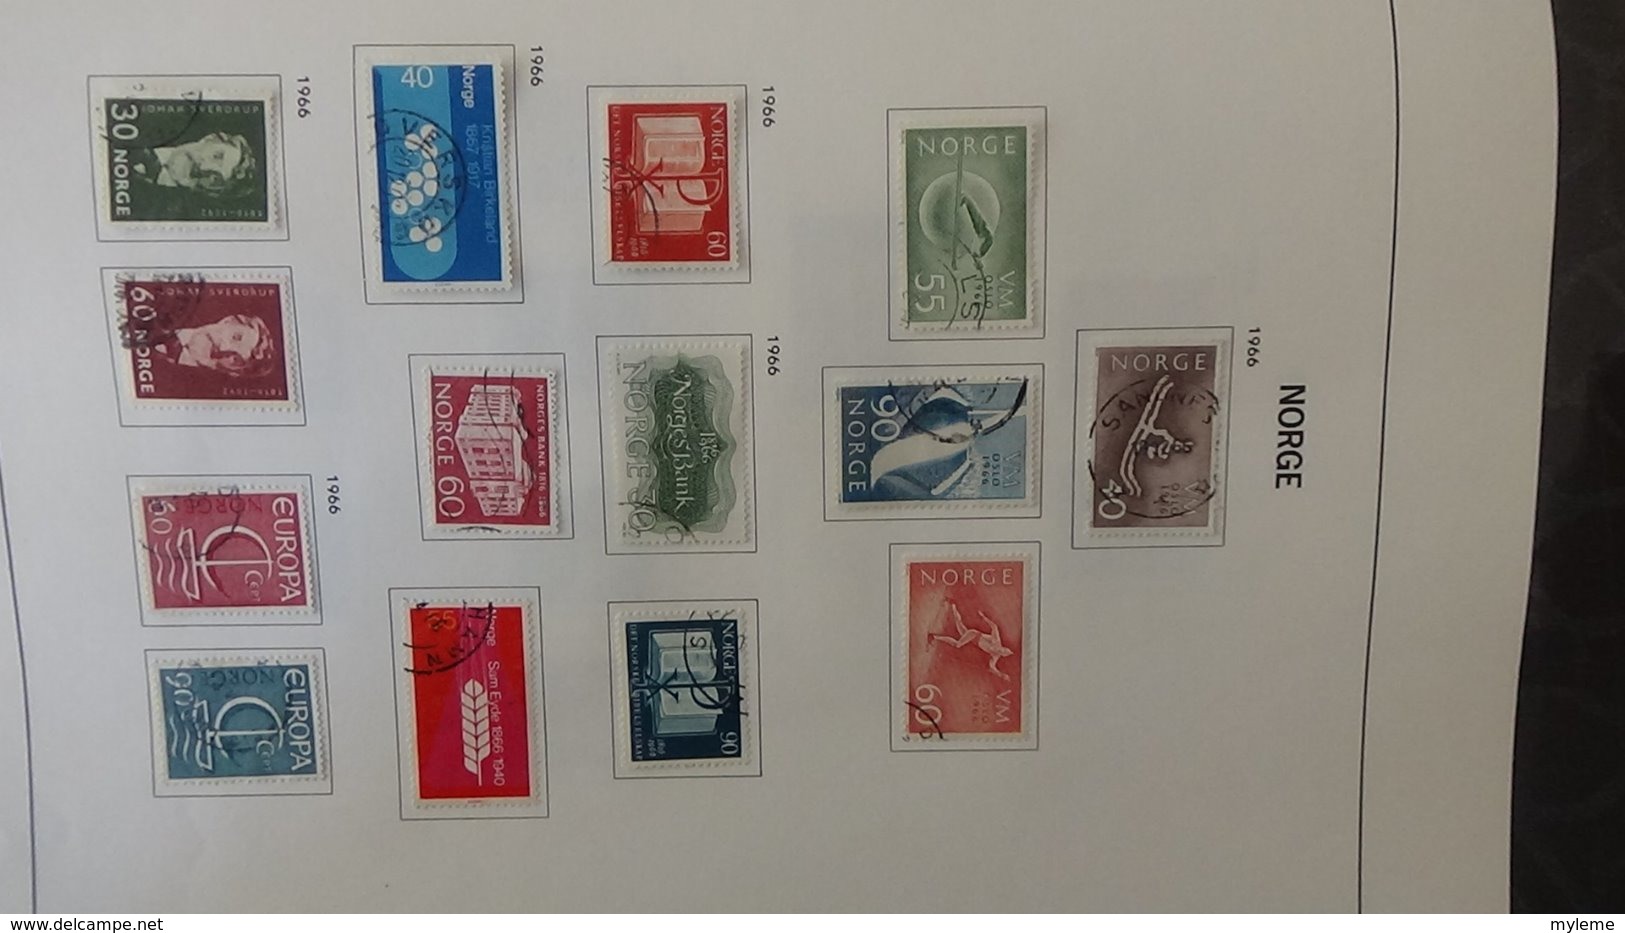 Collection timbres de NORVEGE  Idéal pour thématiques A saisir !!!